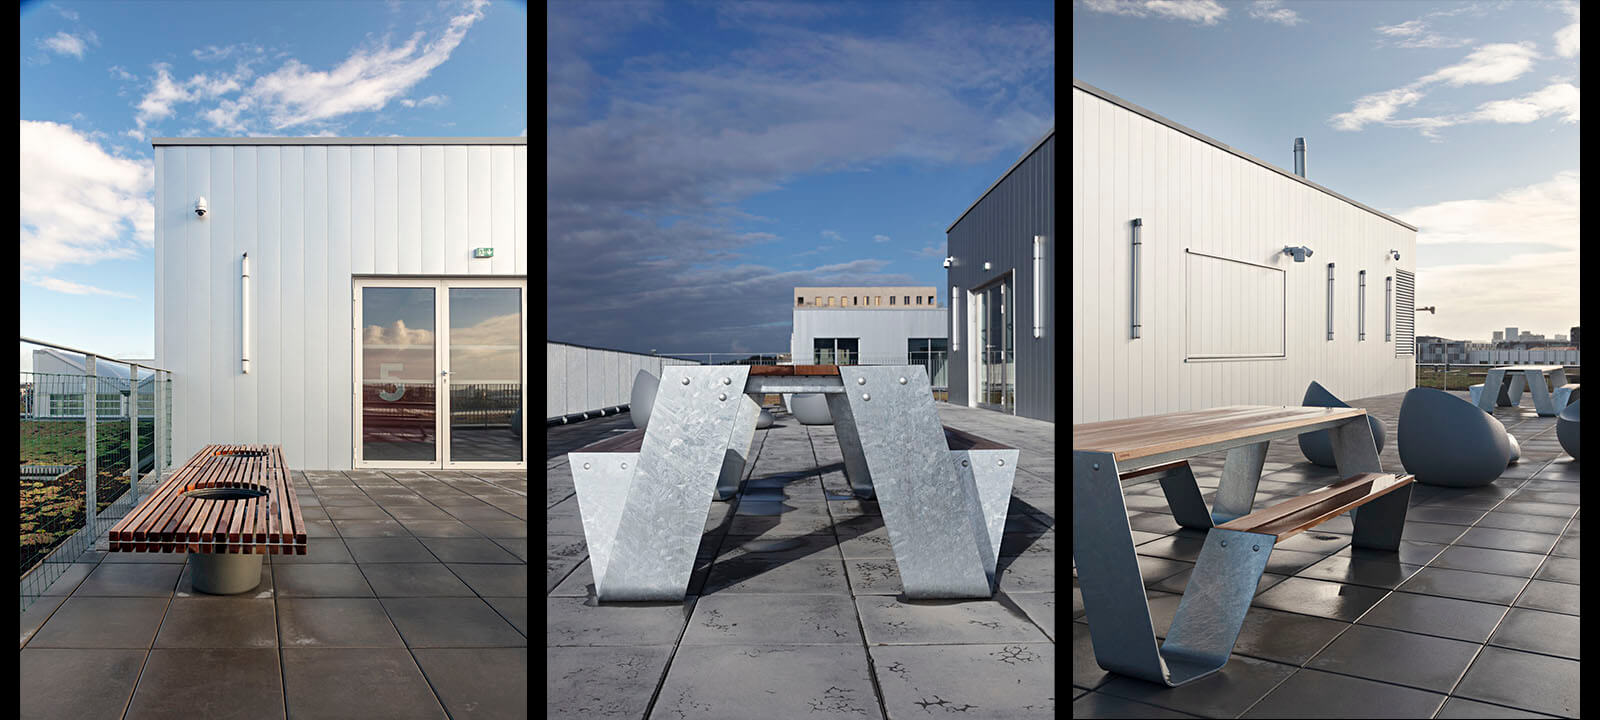 Photographe d'architecture de la terrasse de l'école de design de Nantes Atlantique pour IDM par Gwenaelle Hoyet